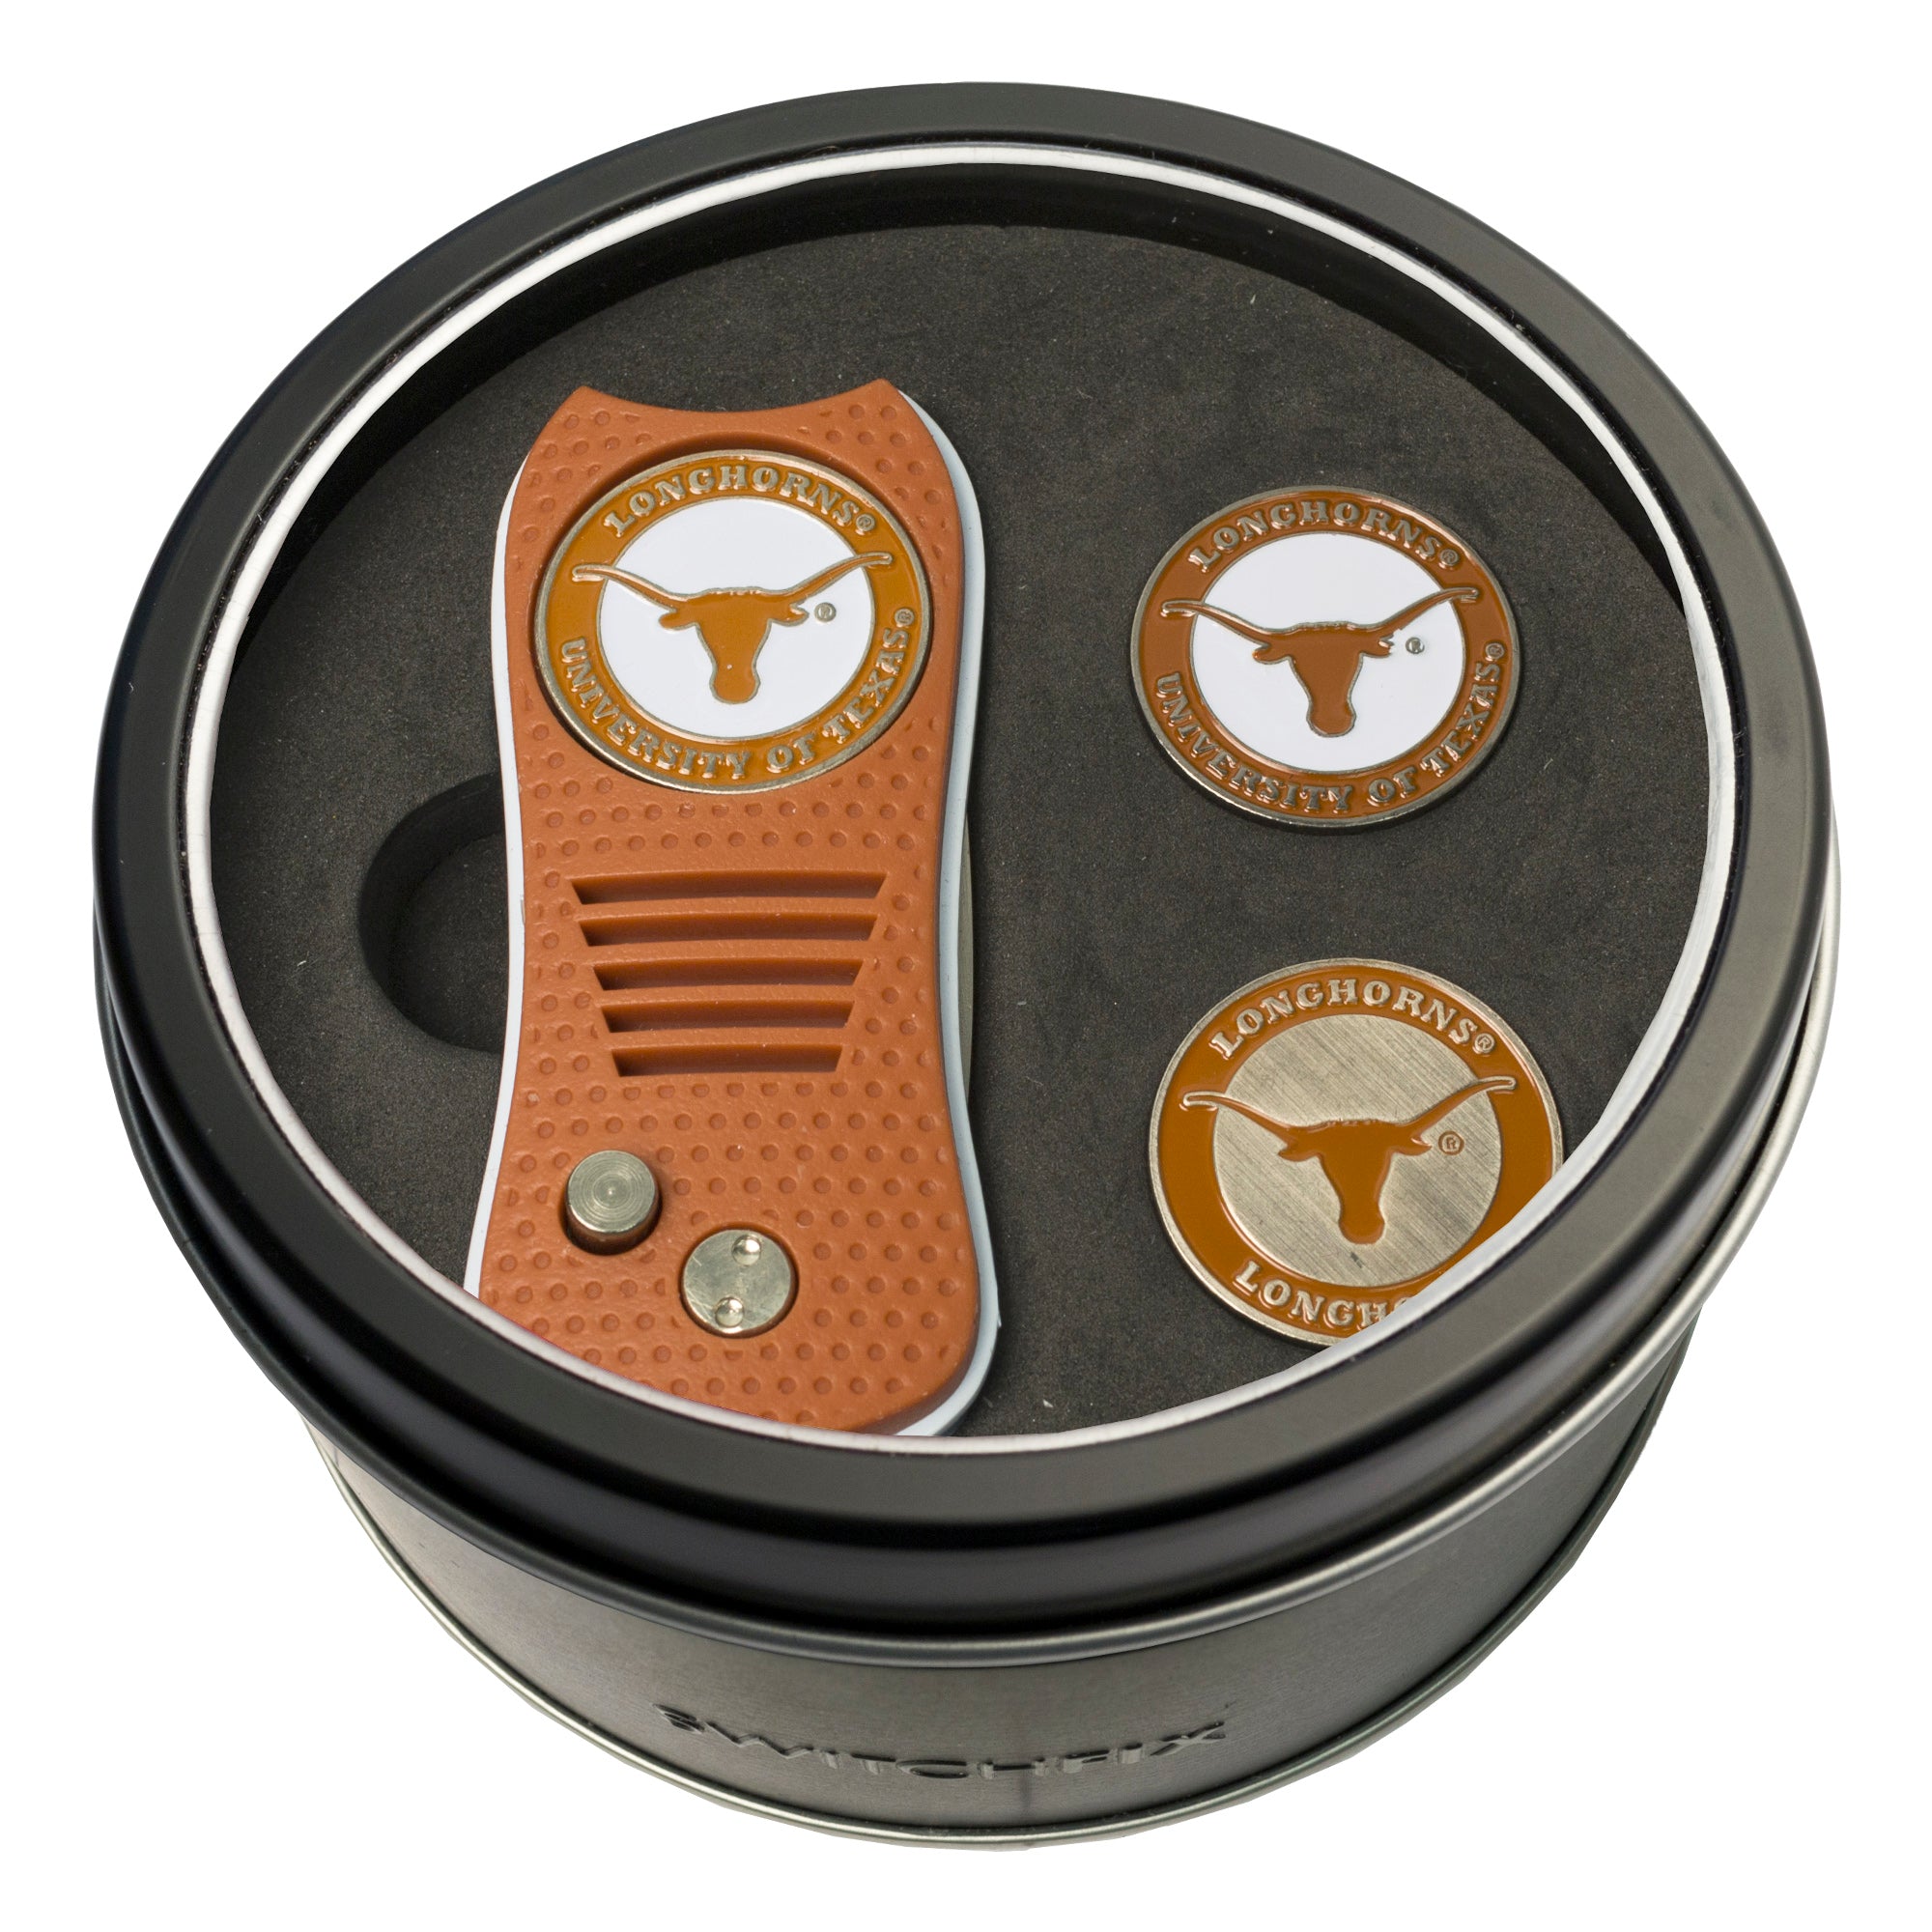 Texas Longhorns Switchblade Divot Tool + 2 Ball Marker Tin Gift Set